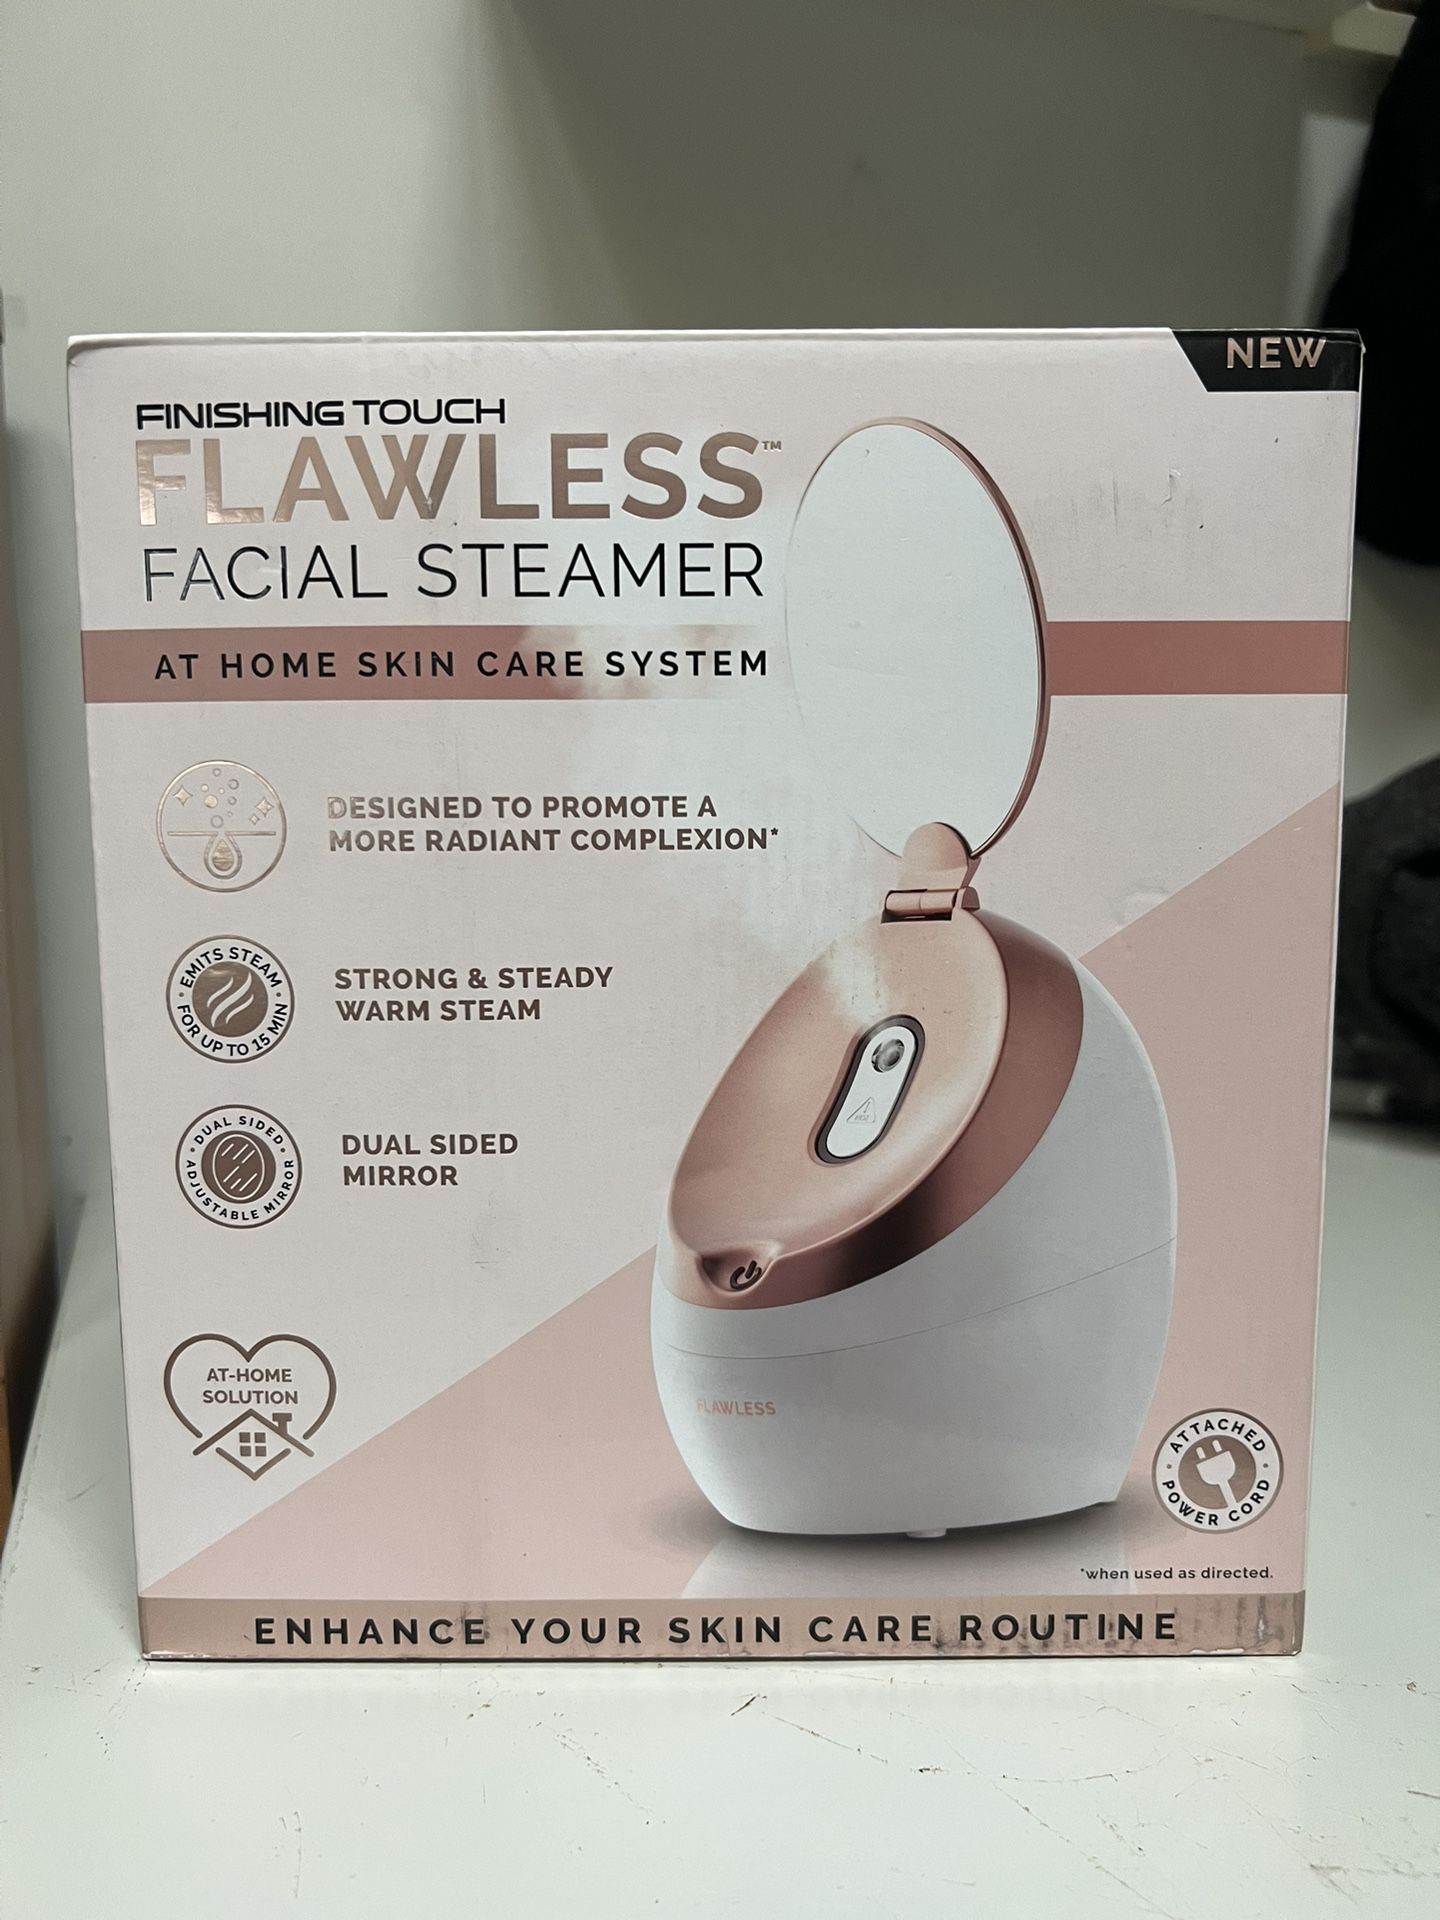 Facial Steamer